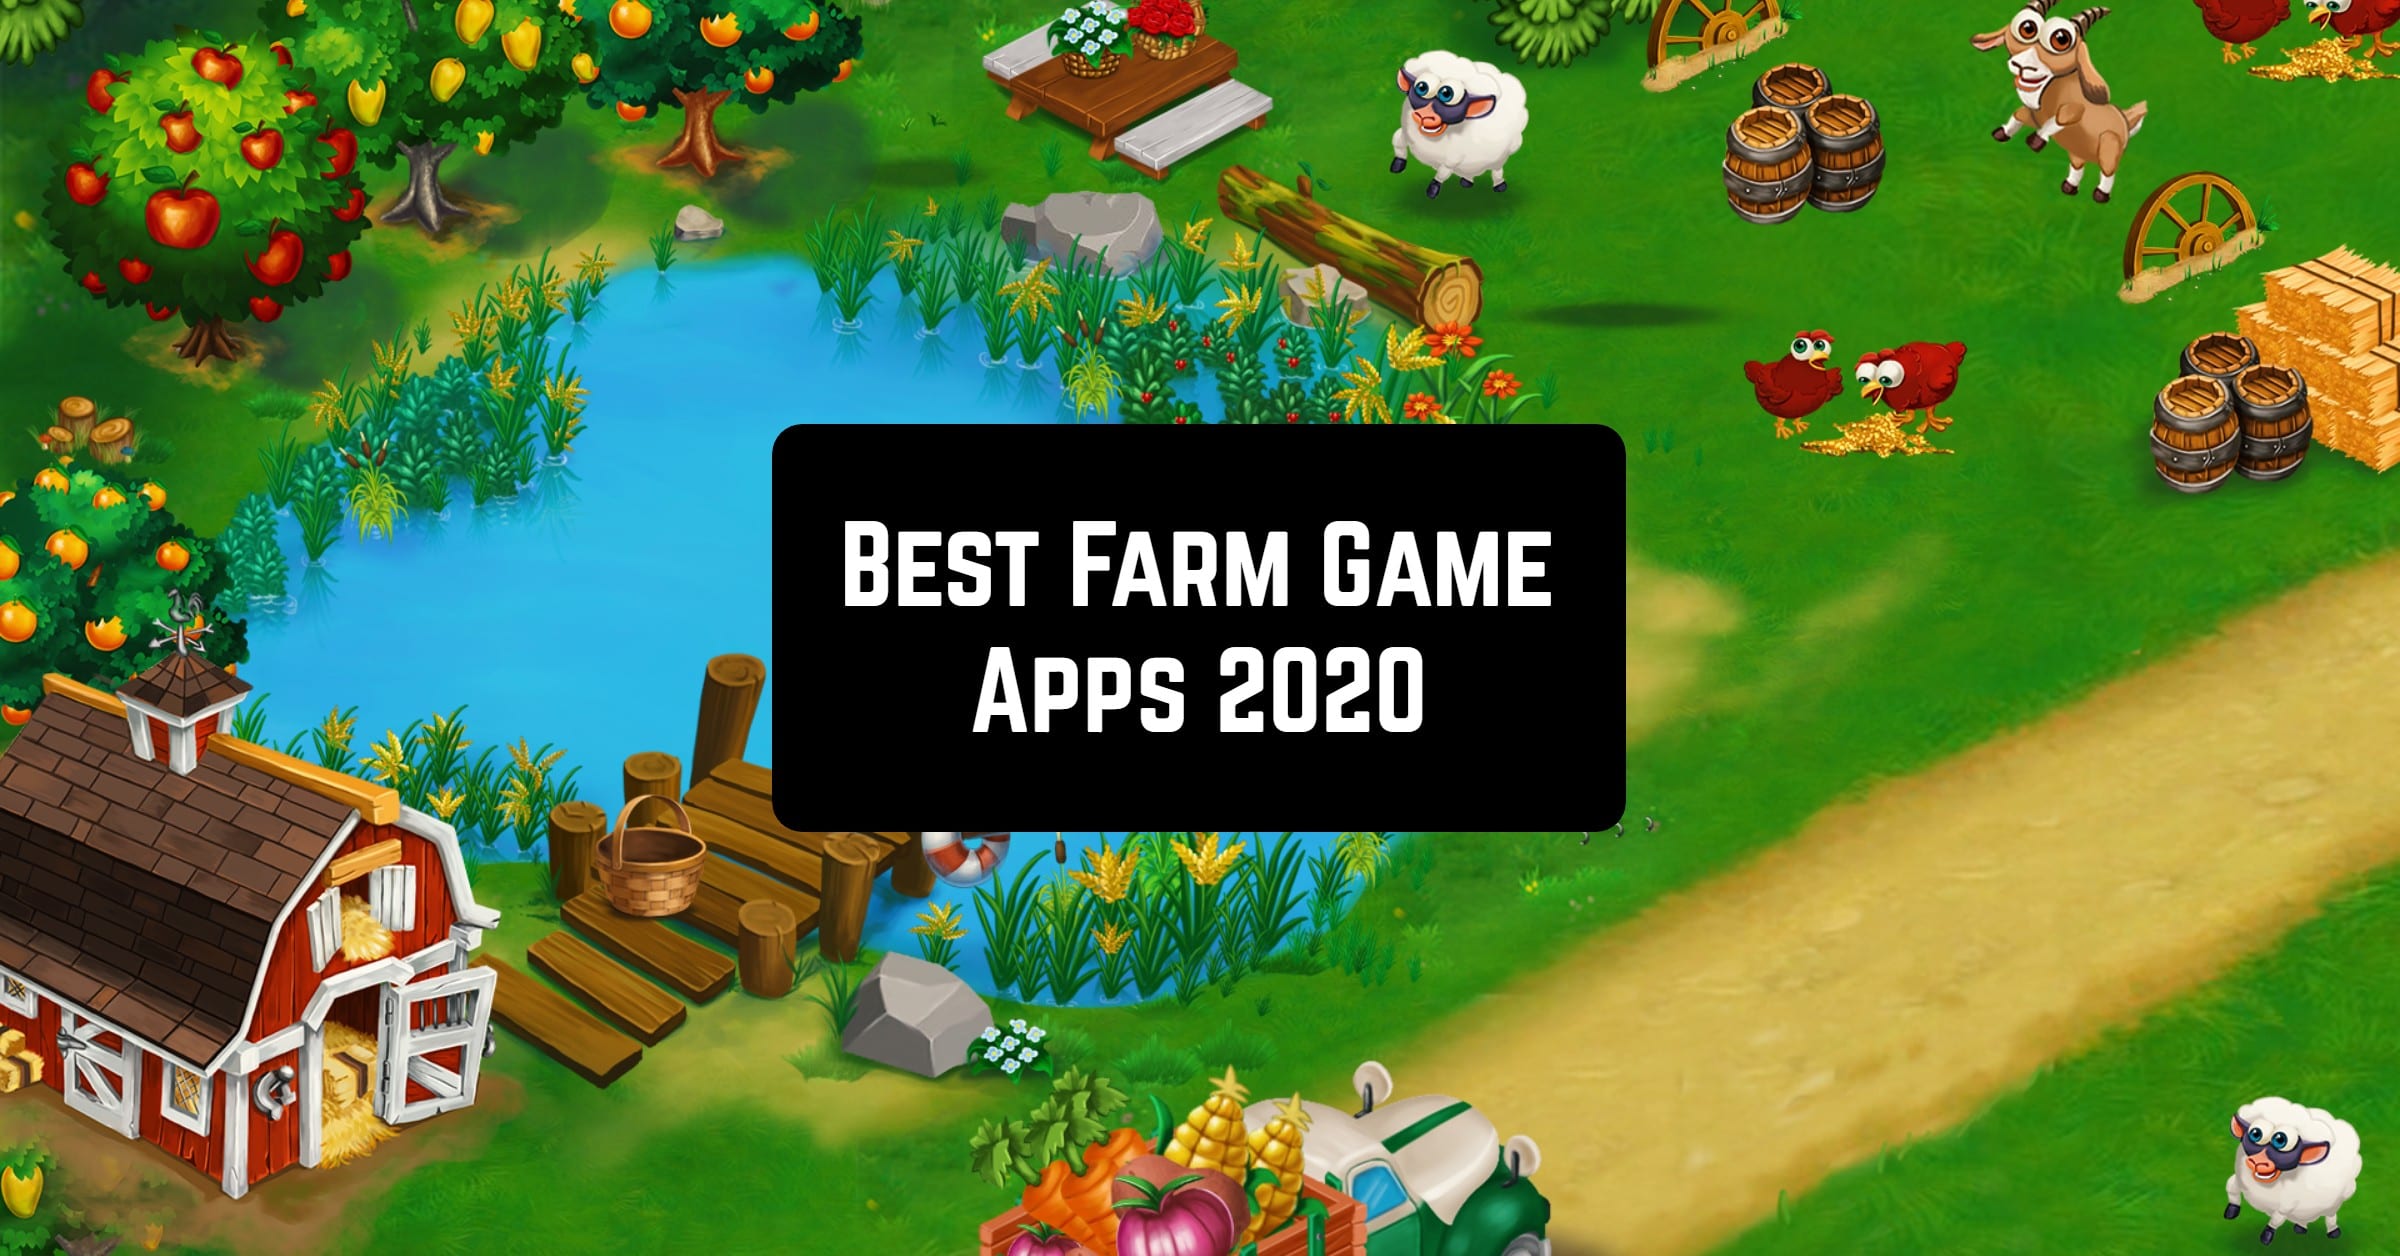 magic farm games to play